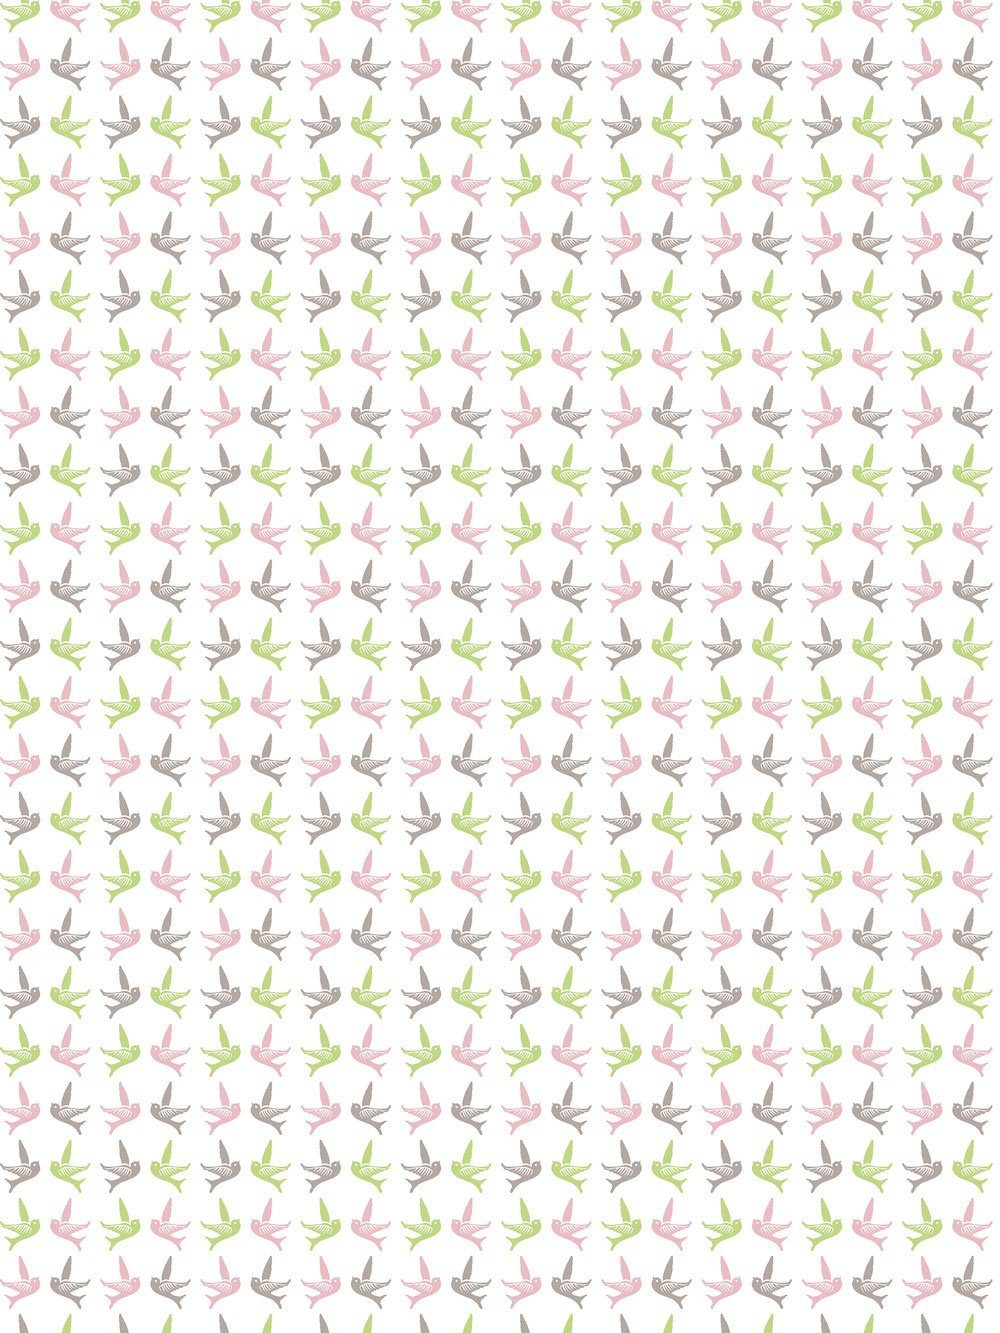 H-Erzmade Zeichenpapier Décopatch-Papier 685 Vögel pastell, 30 x 40 cm